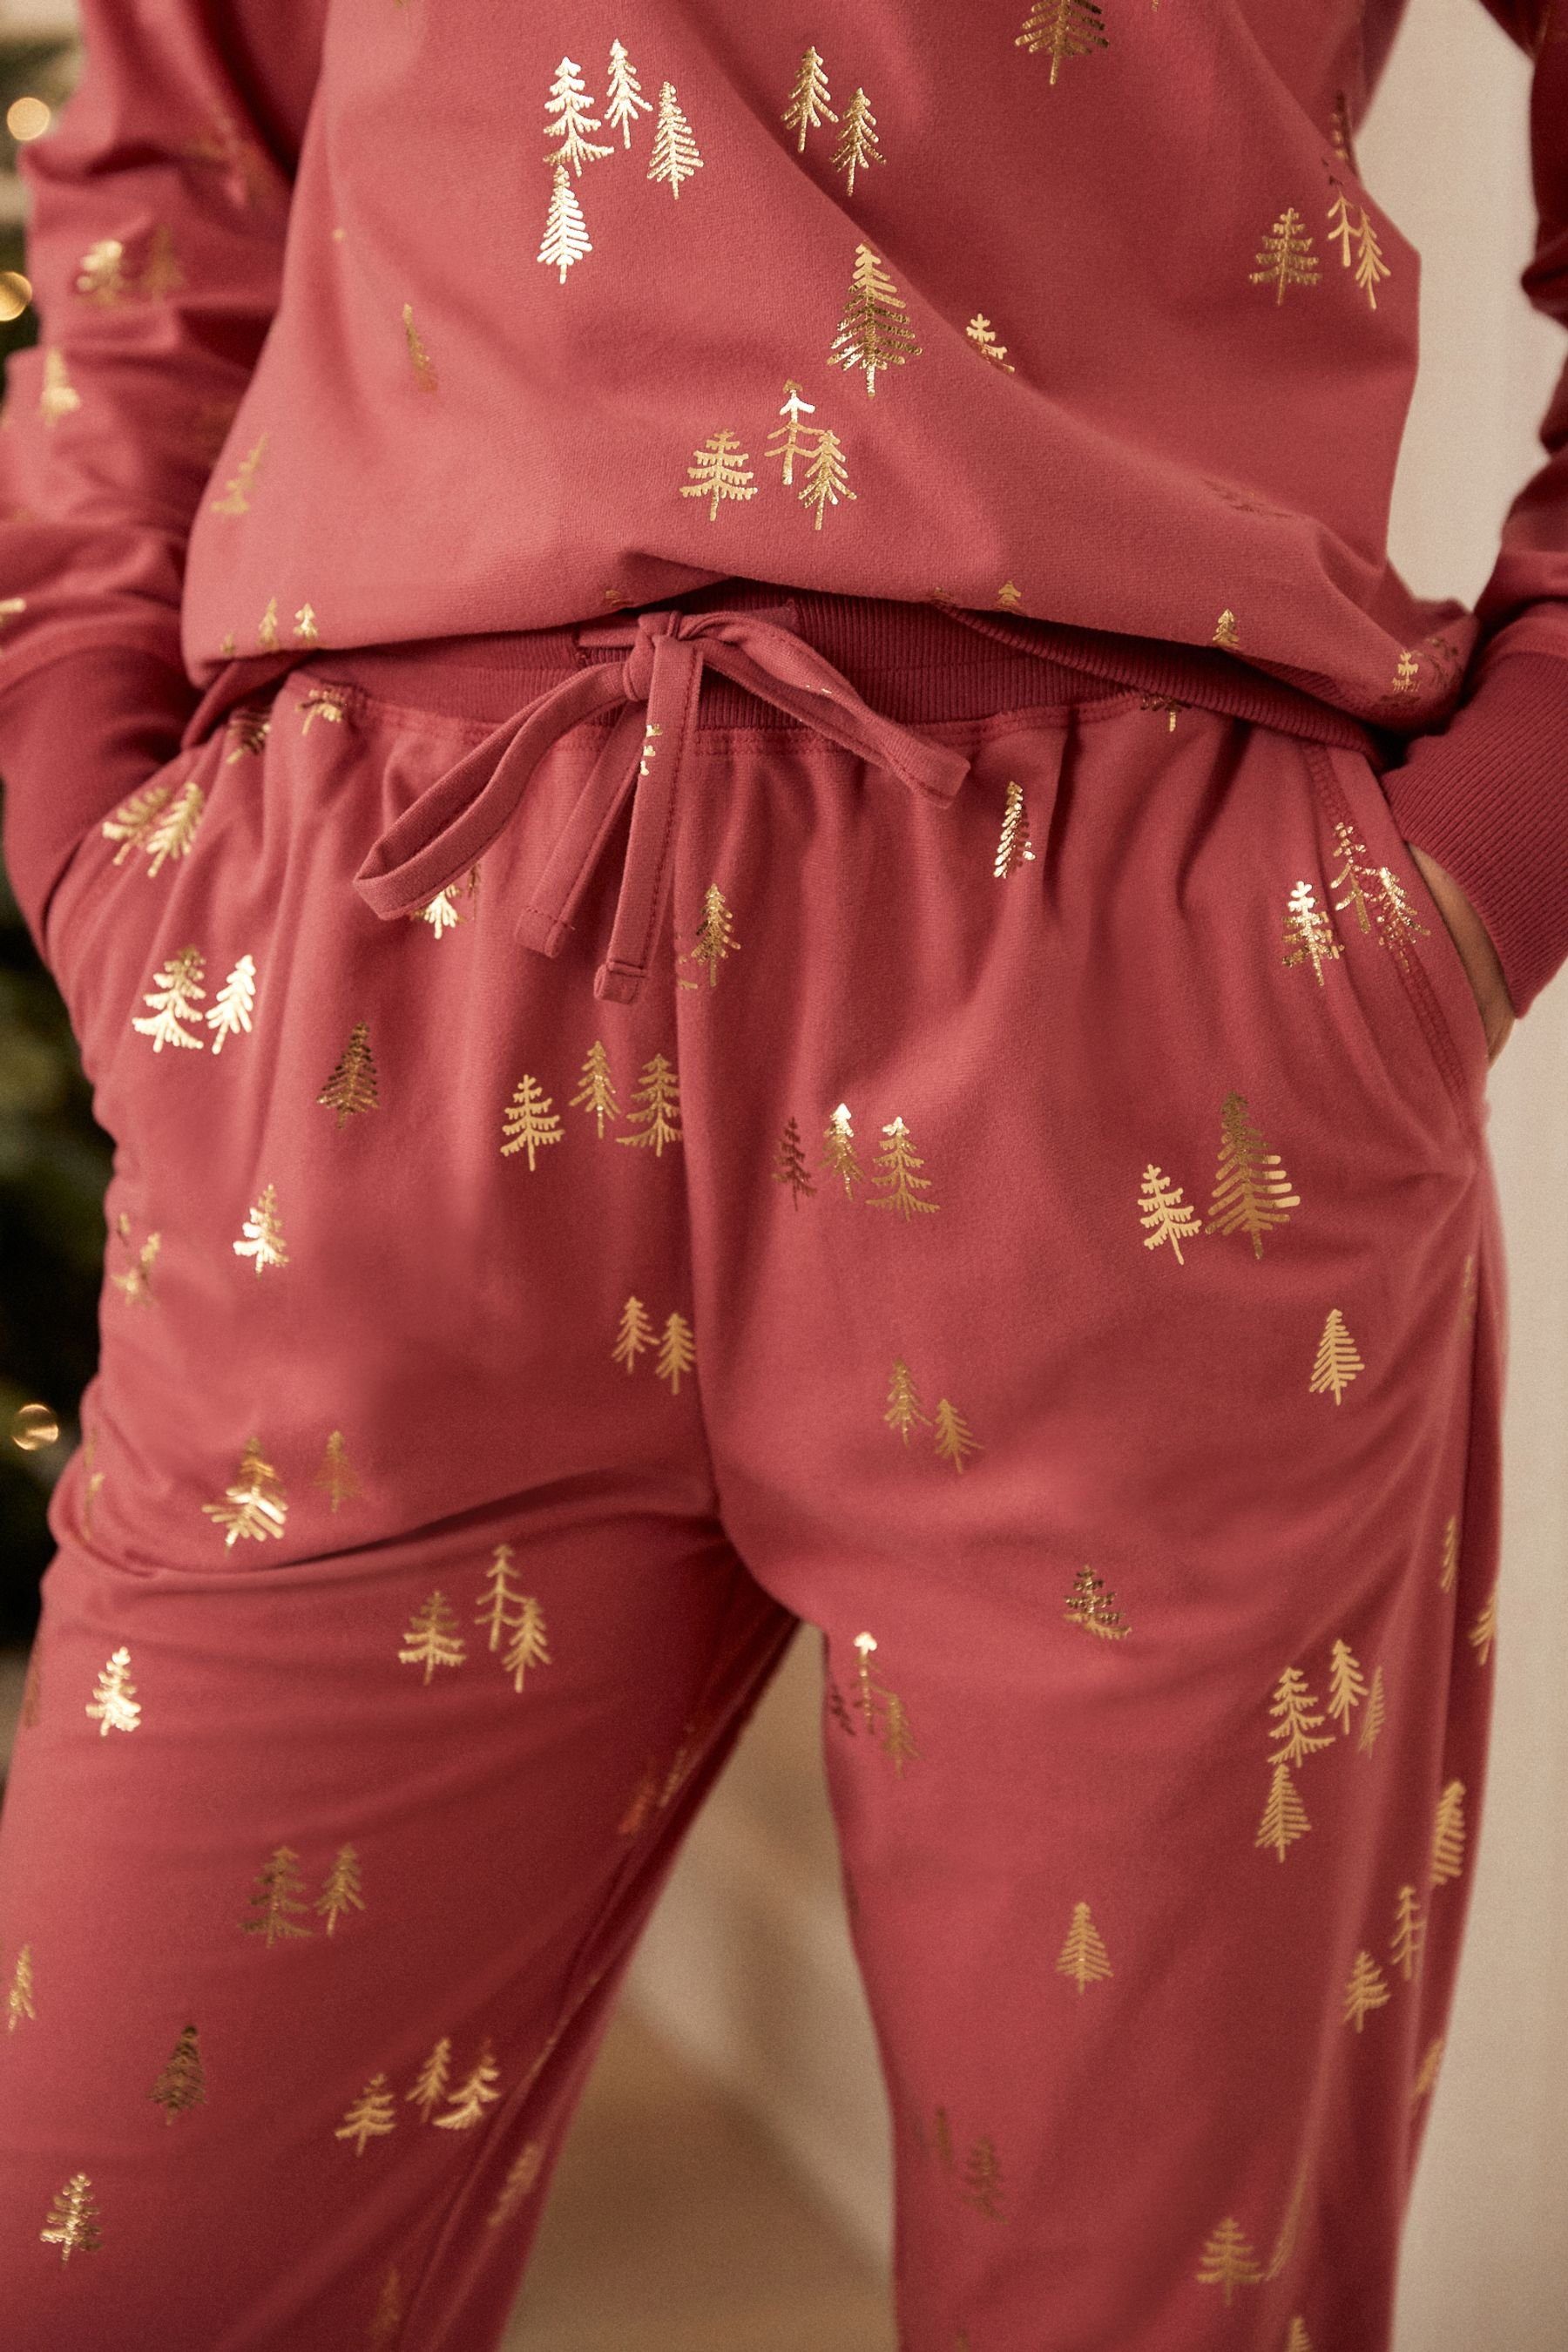 Next Pyjama Bequemer und (2 Pyjama tlg) Pink Coral superweicher Foil